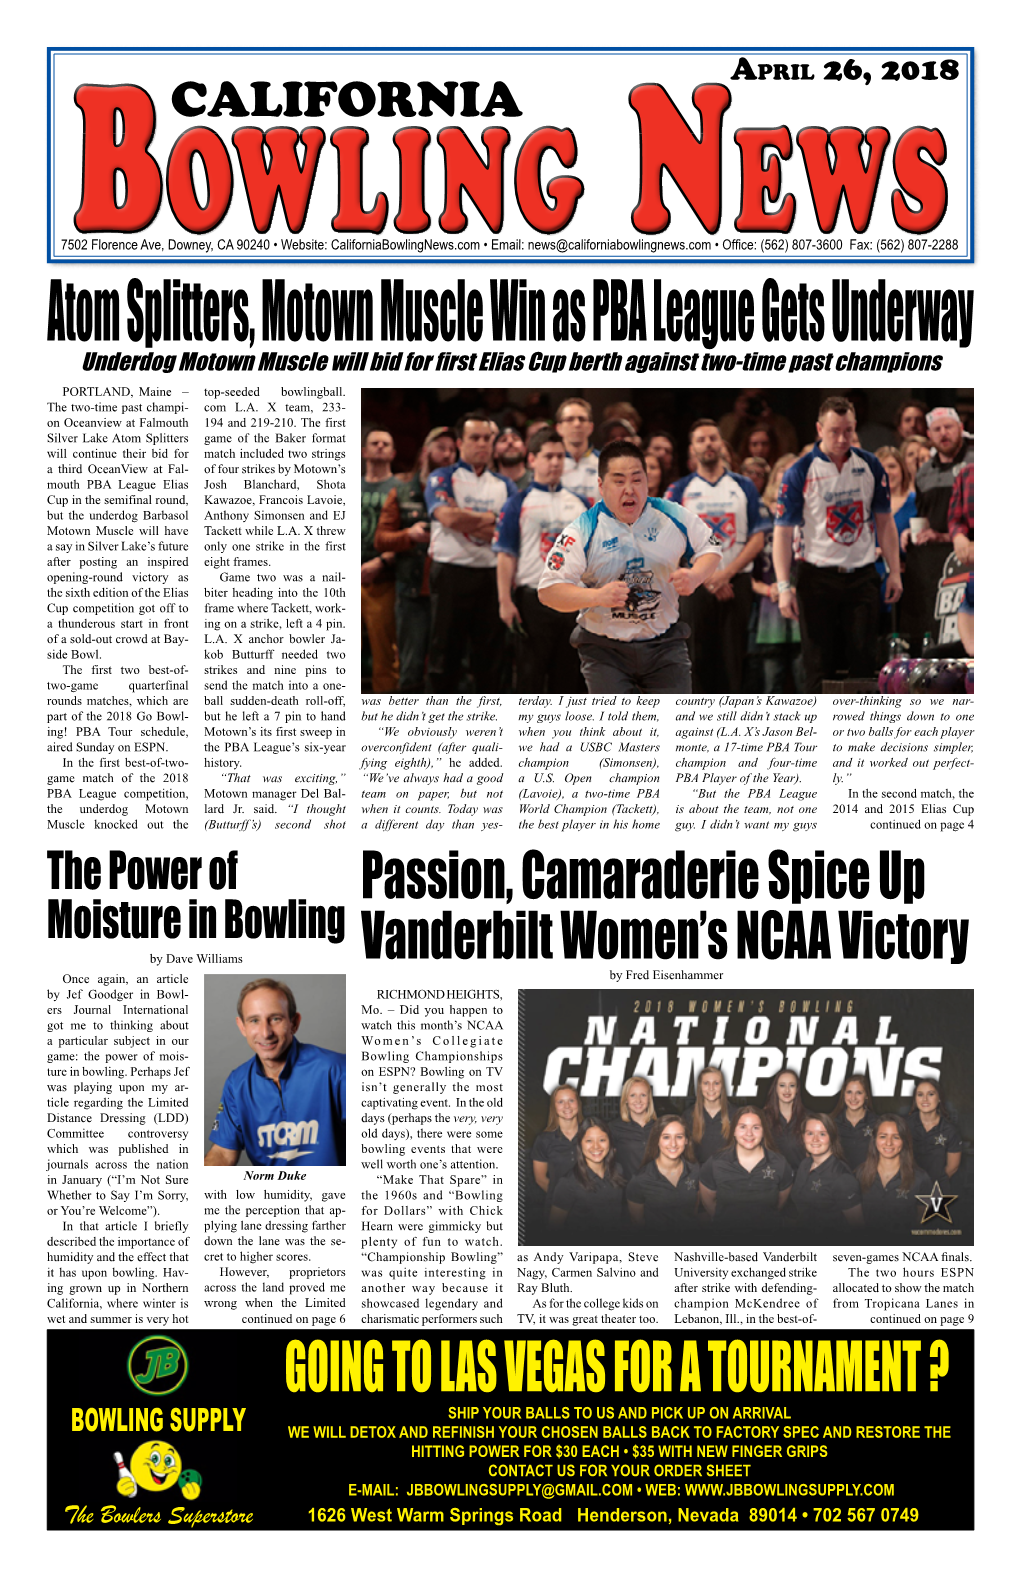 Atom Splitters, Motown Muscle Win As PBA League Gets Underway